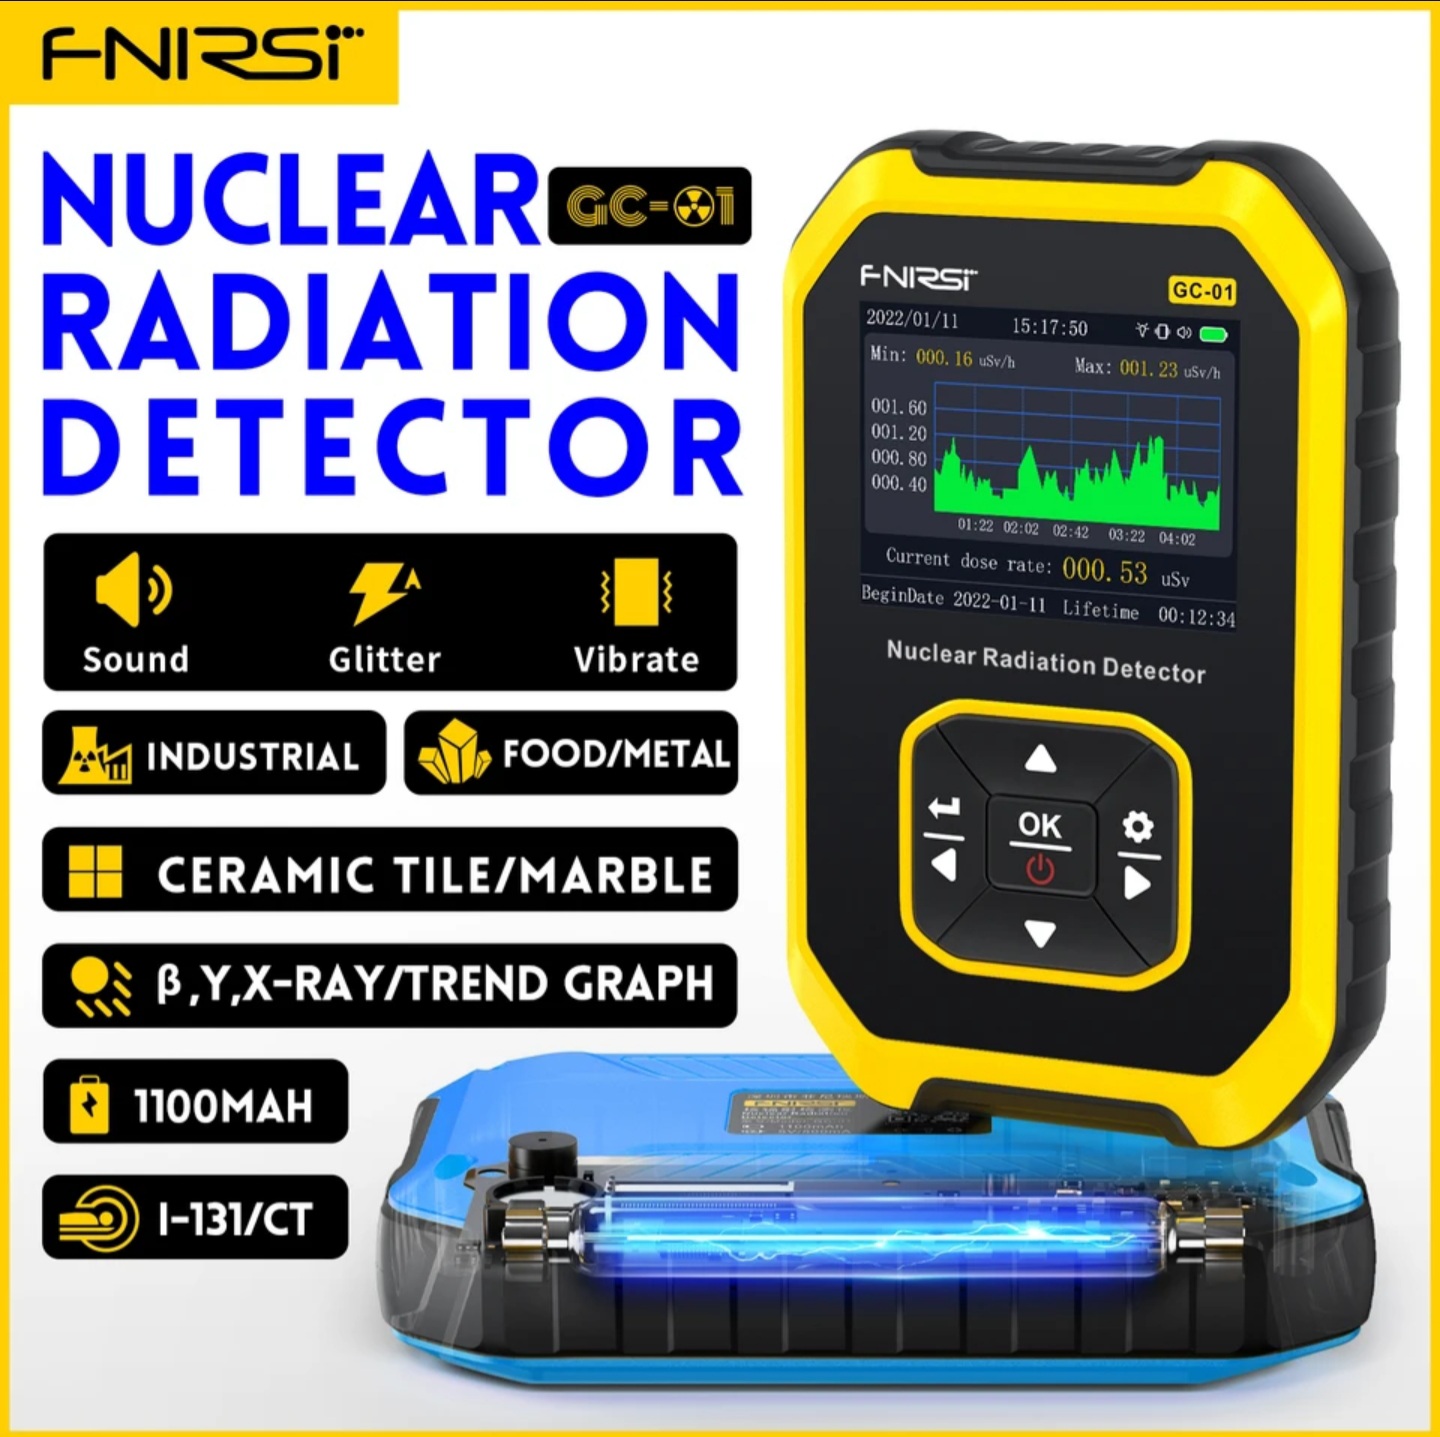 Nüvə radiasiya detektoru-dozimetr. Model: FNIRSI GC-01 ●